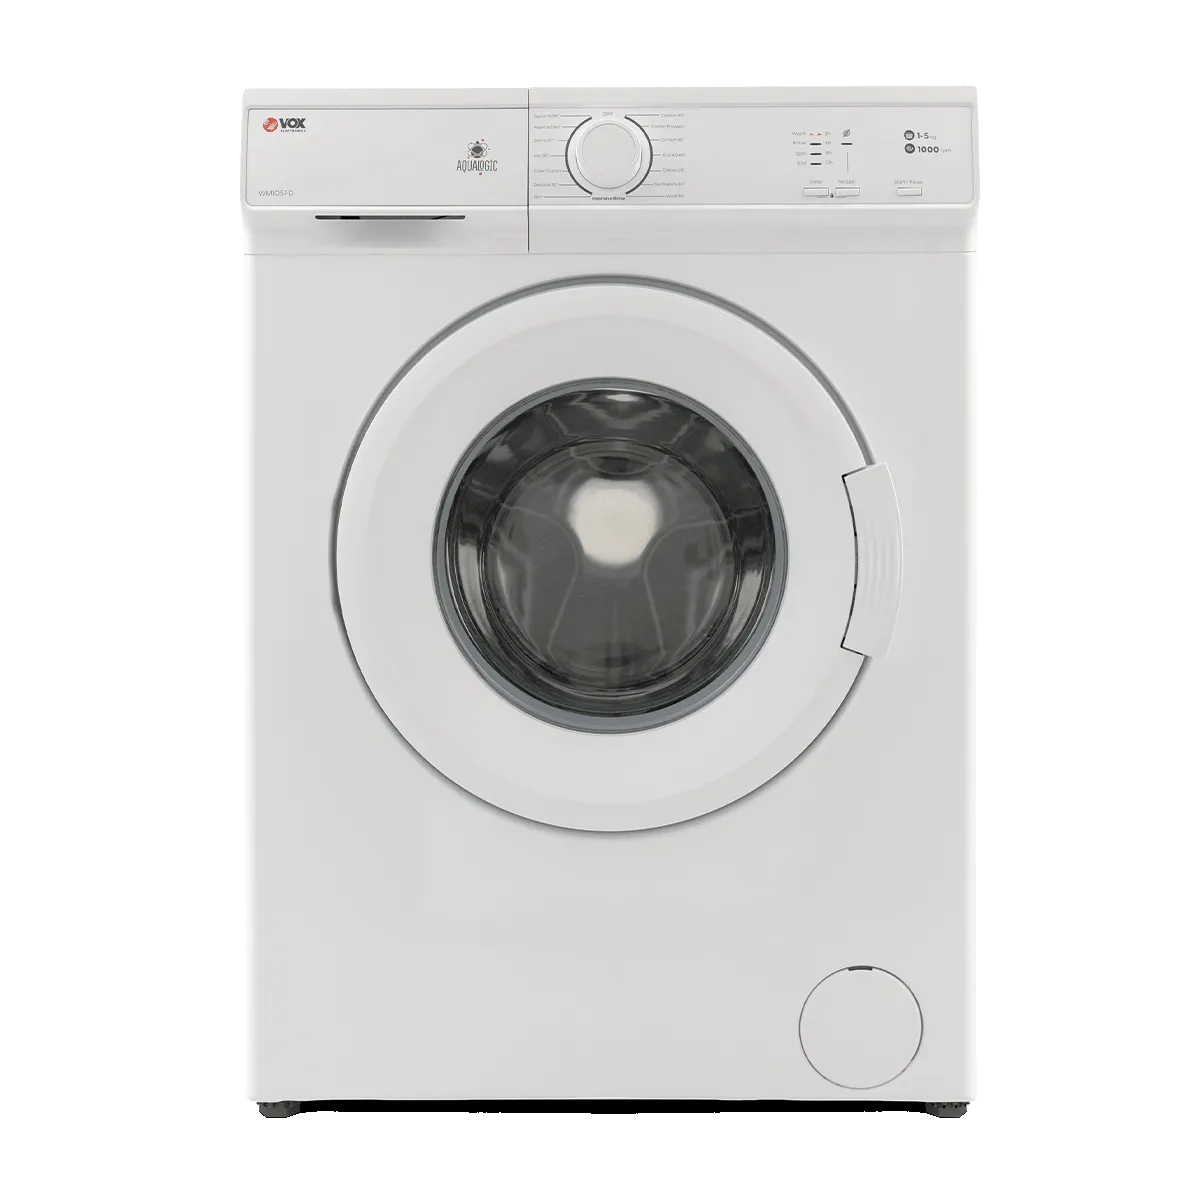 Машина за перење алишта WM1051-D 